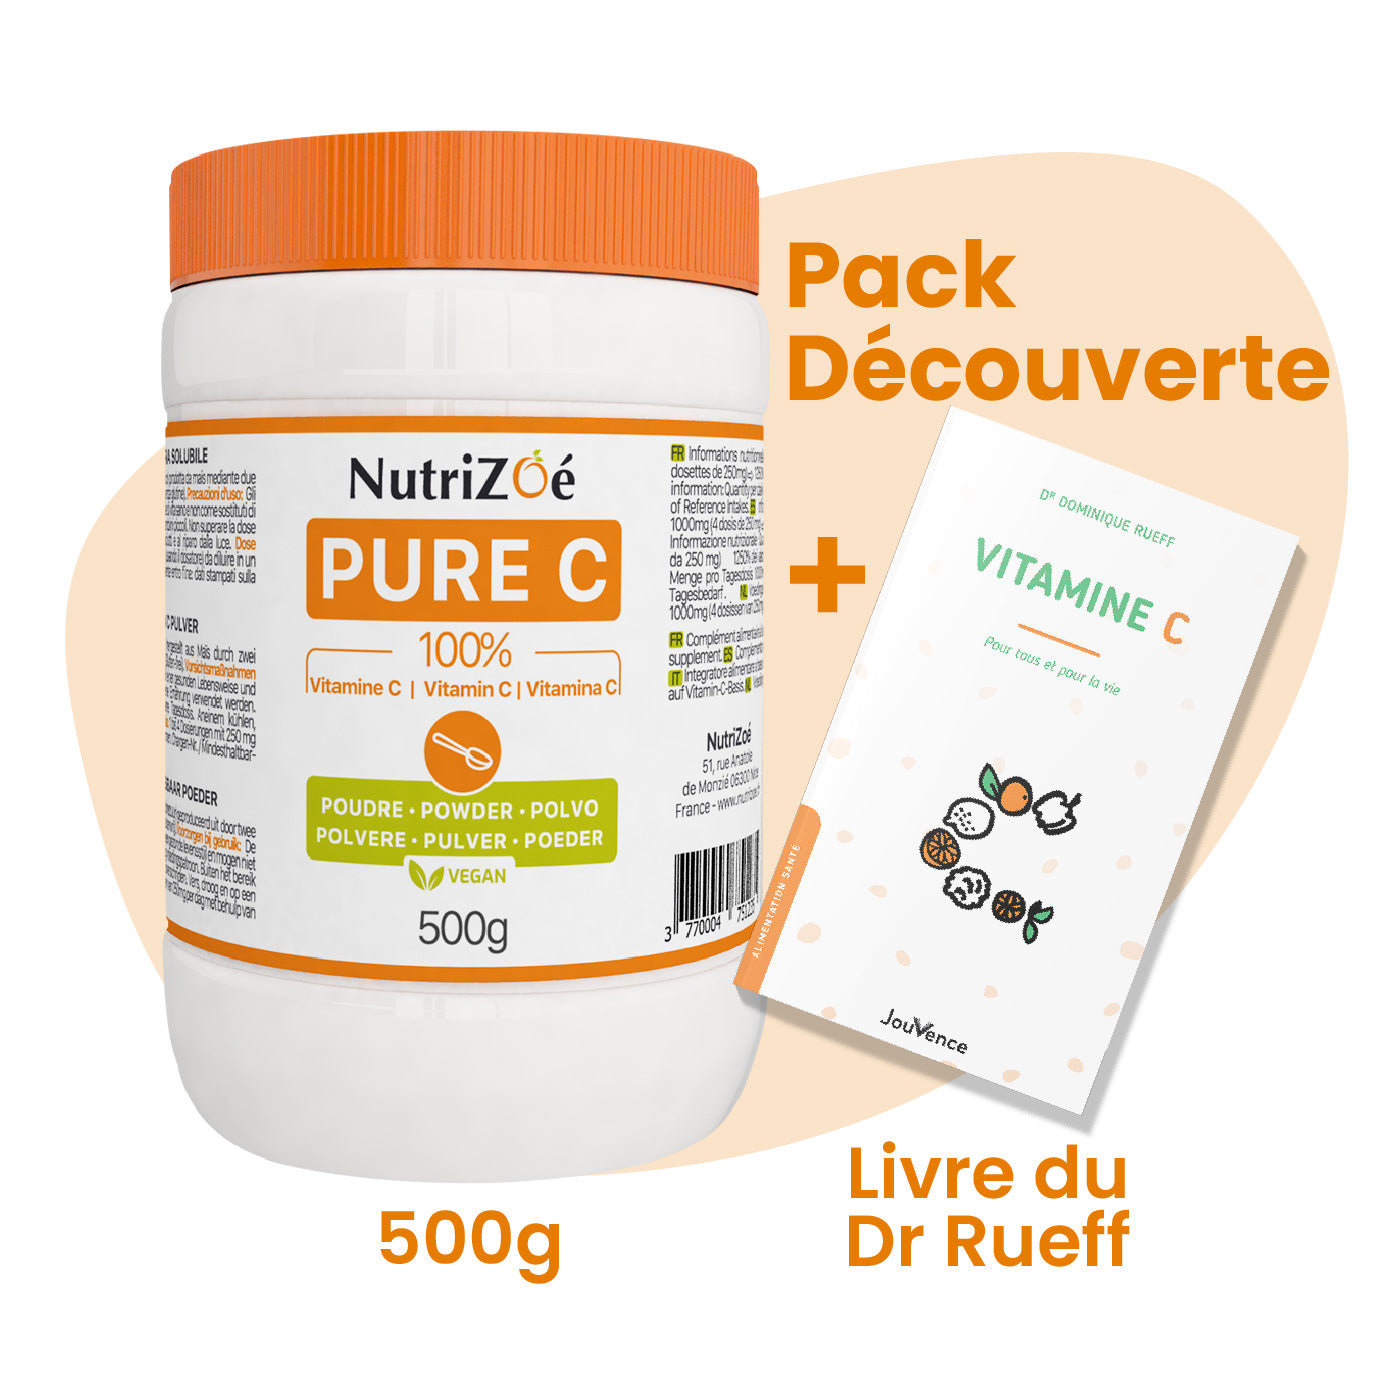 Pack Découverte - Vitamine C en poudre 500g + Livre du Dr Rueff